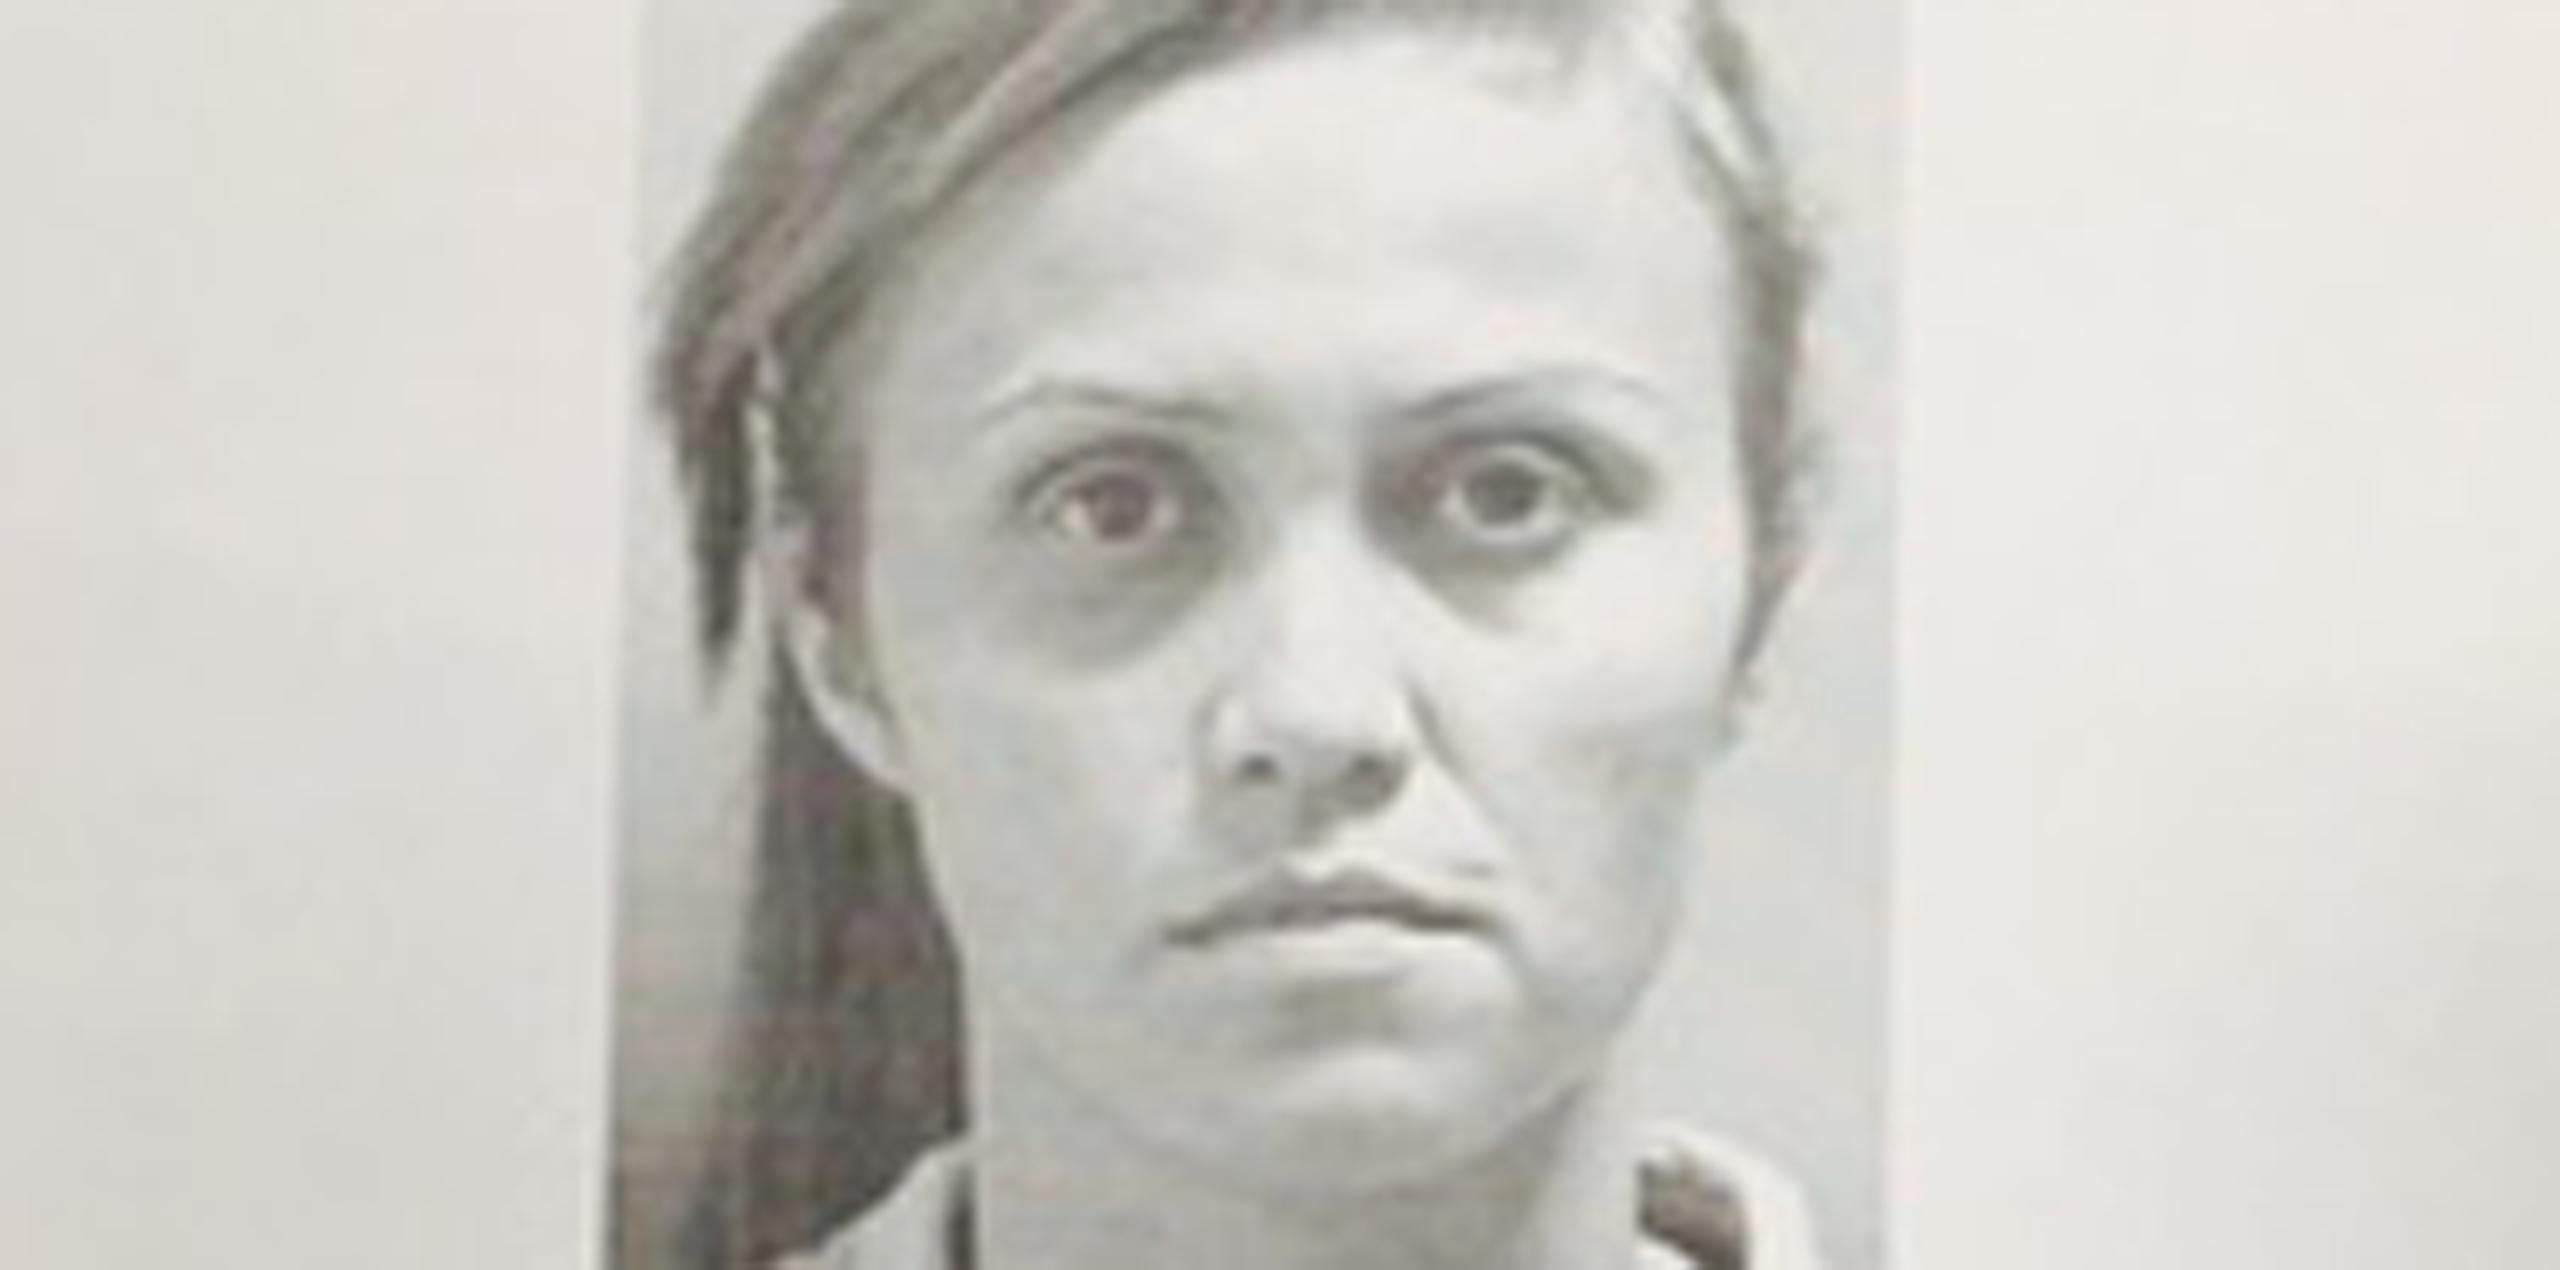 Keila M. Vale Siragusa, de 32 años, quedó en libertad tras prestar una fianza de $24,000. (Suministrada)